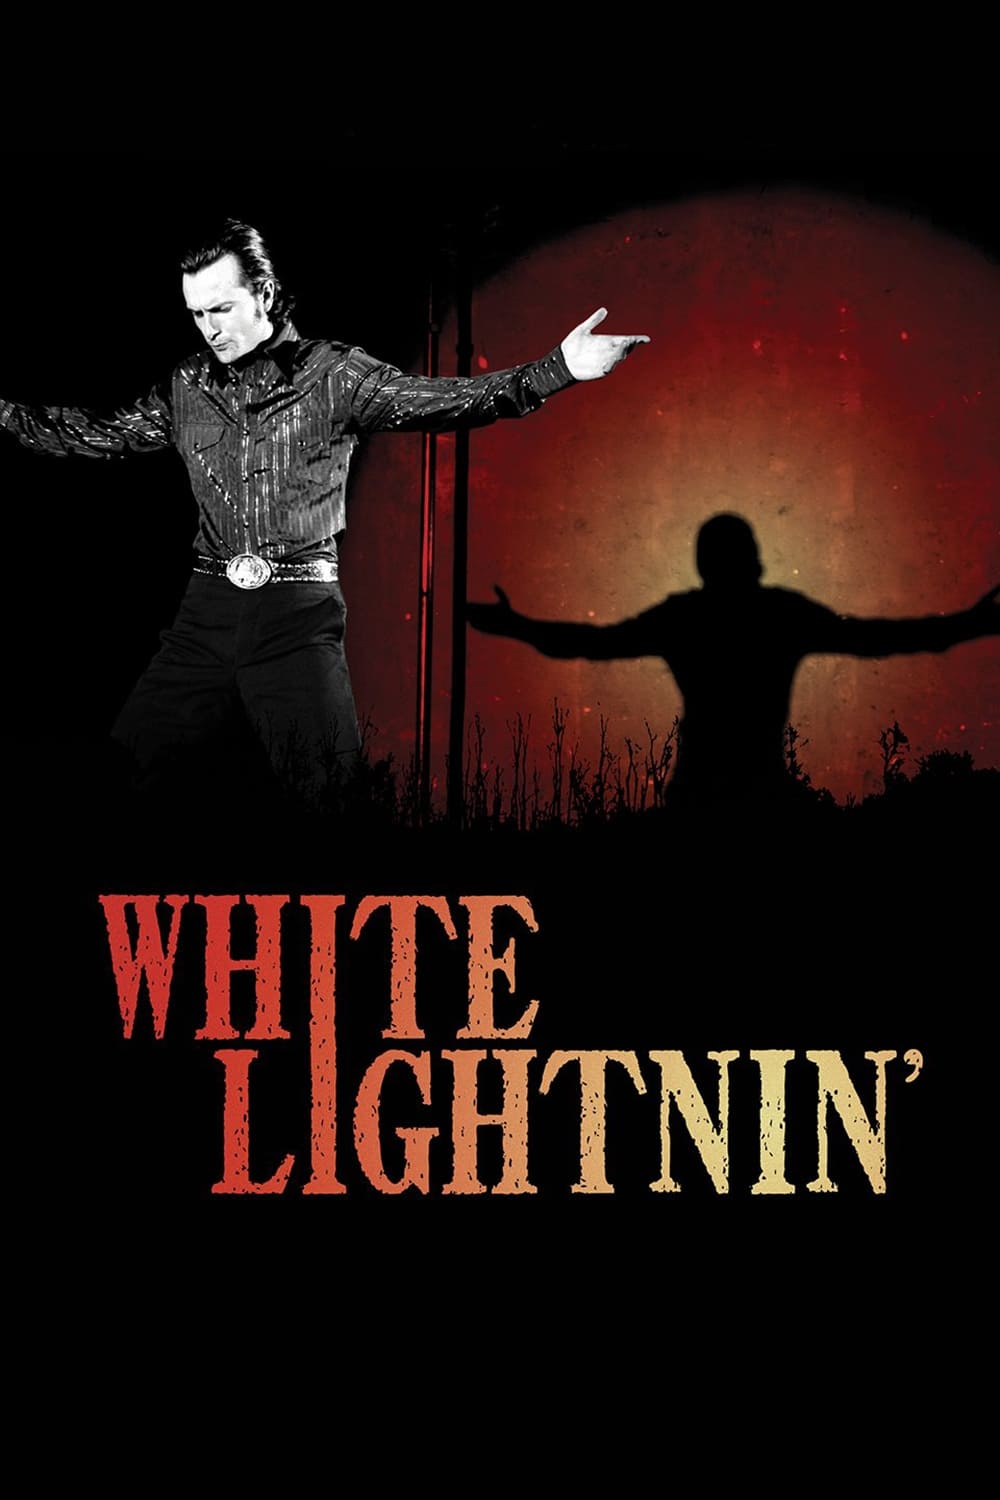 White Lightnin' film